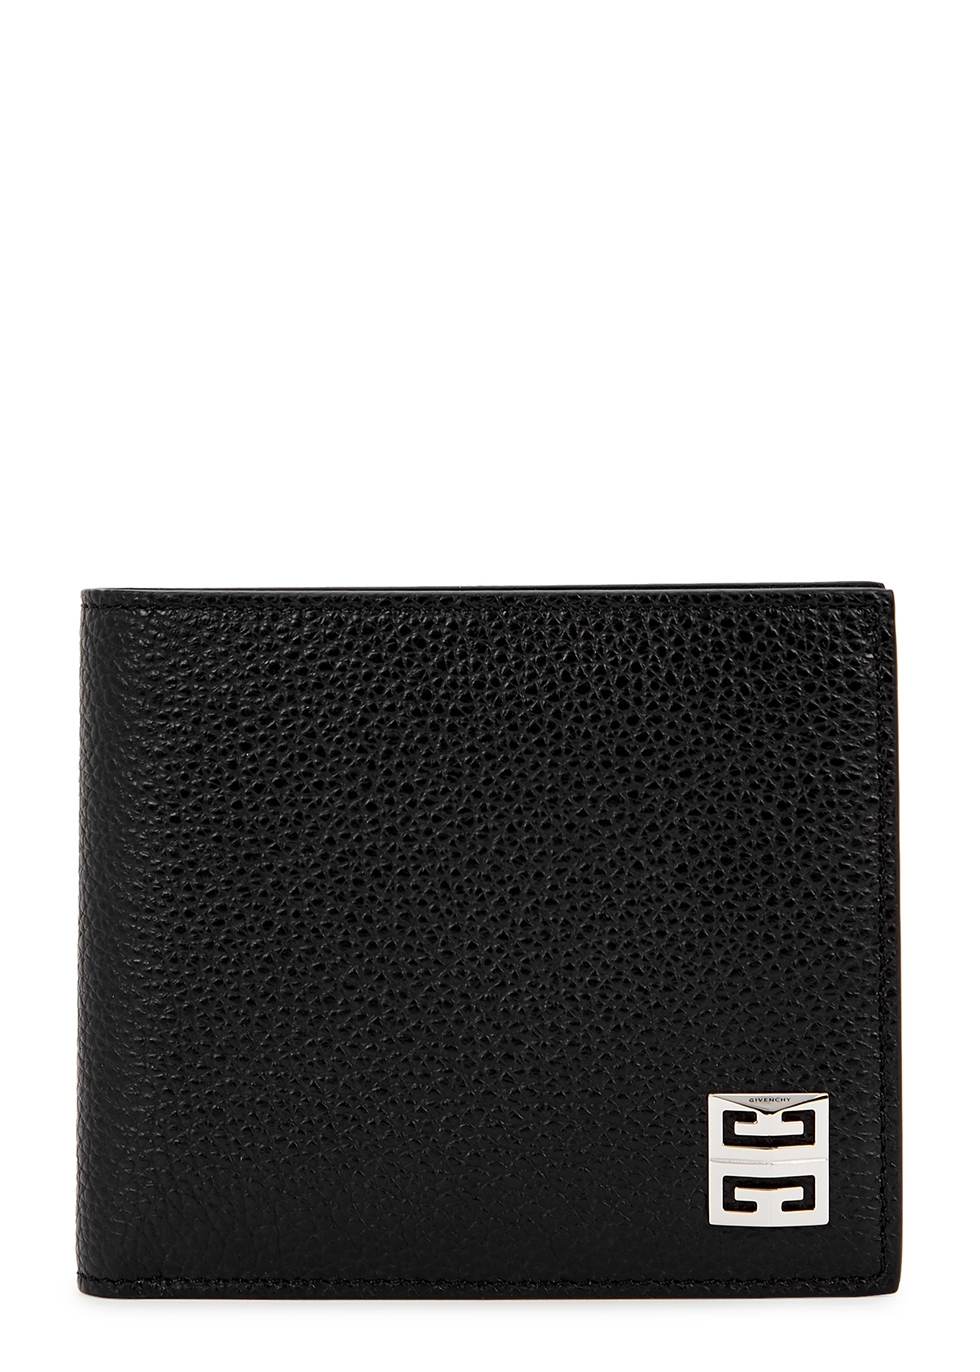 Black logo leather wallet